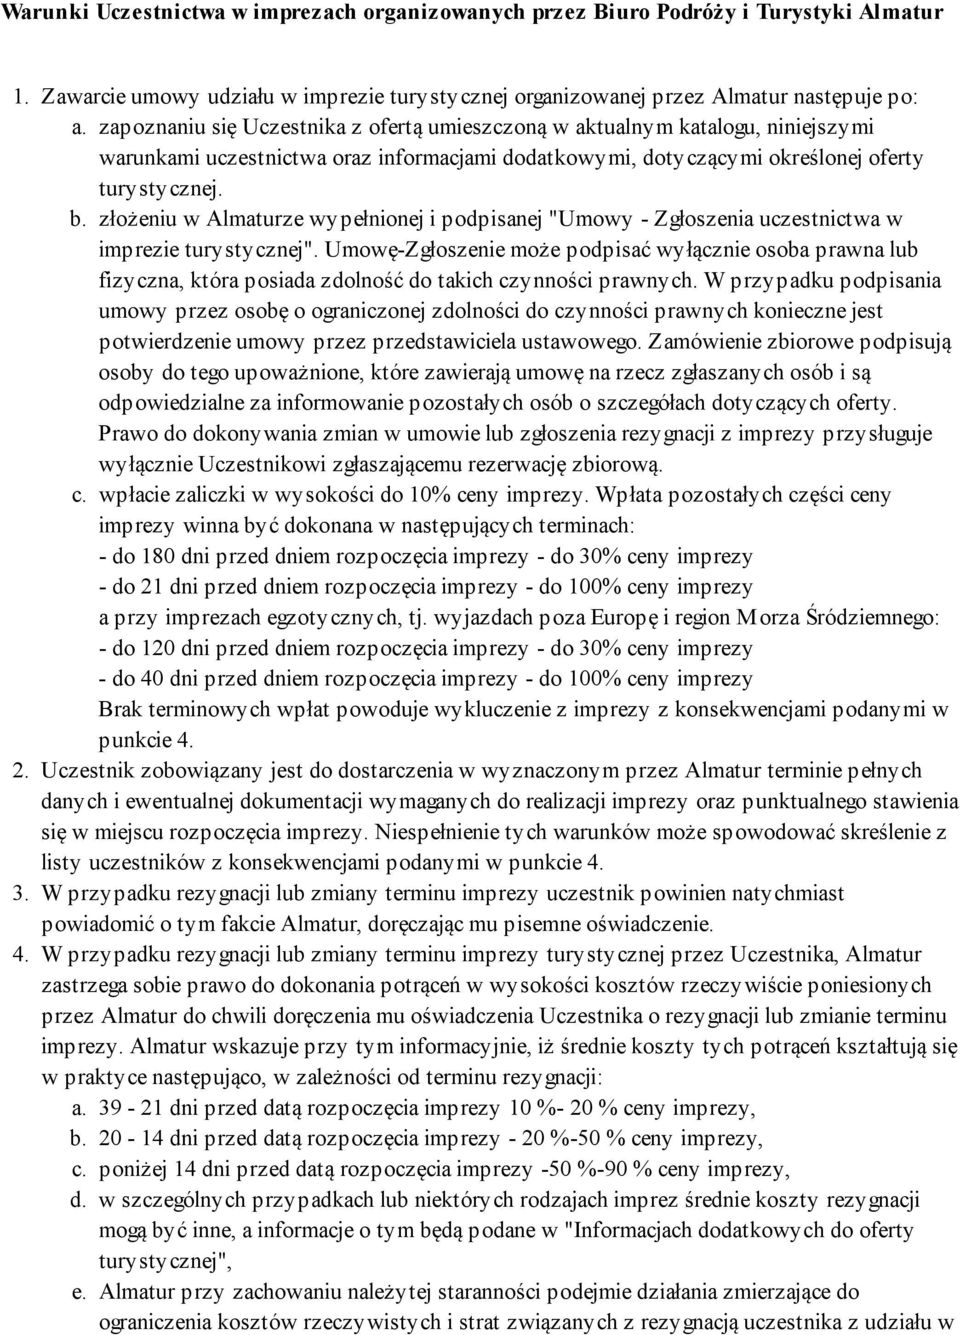 informacjami dodatkowymi, dotyczącymi określonej oferty turystycznej. złożeniu w Almaturze wypełnionej i podpisanej "Umowy - Zgłoszenia uczestnictwa w imprezie turystycznej".